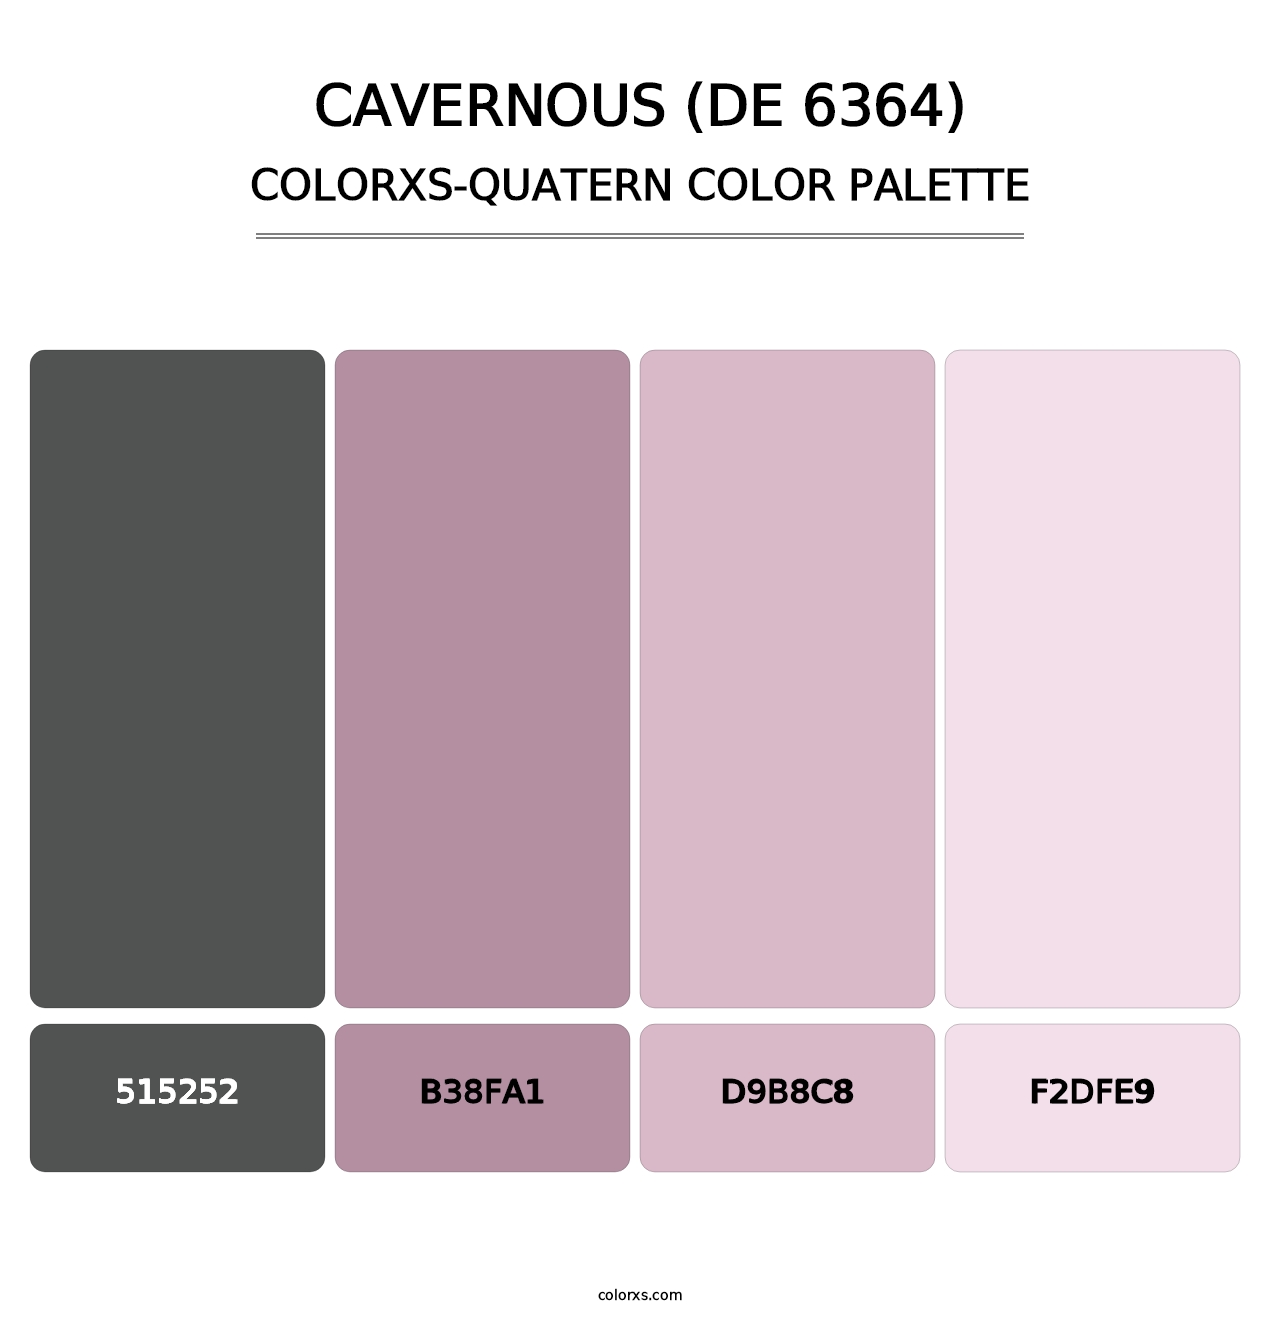 Cavernous (DE 6364) - Colorxs Quatern Palette